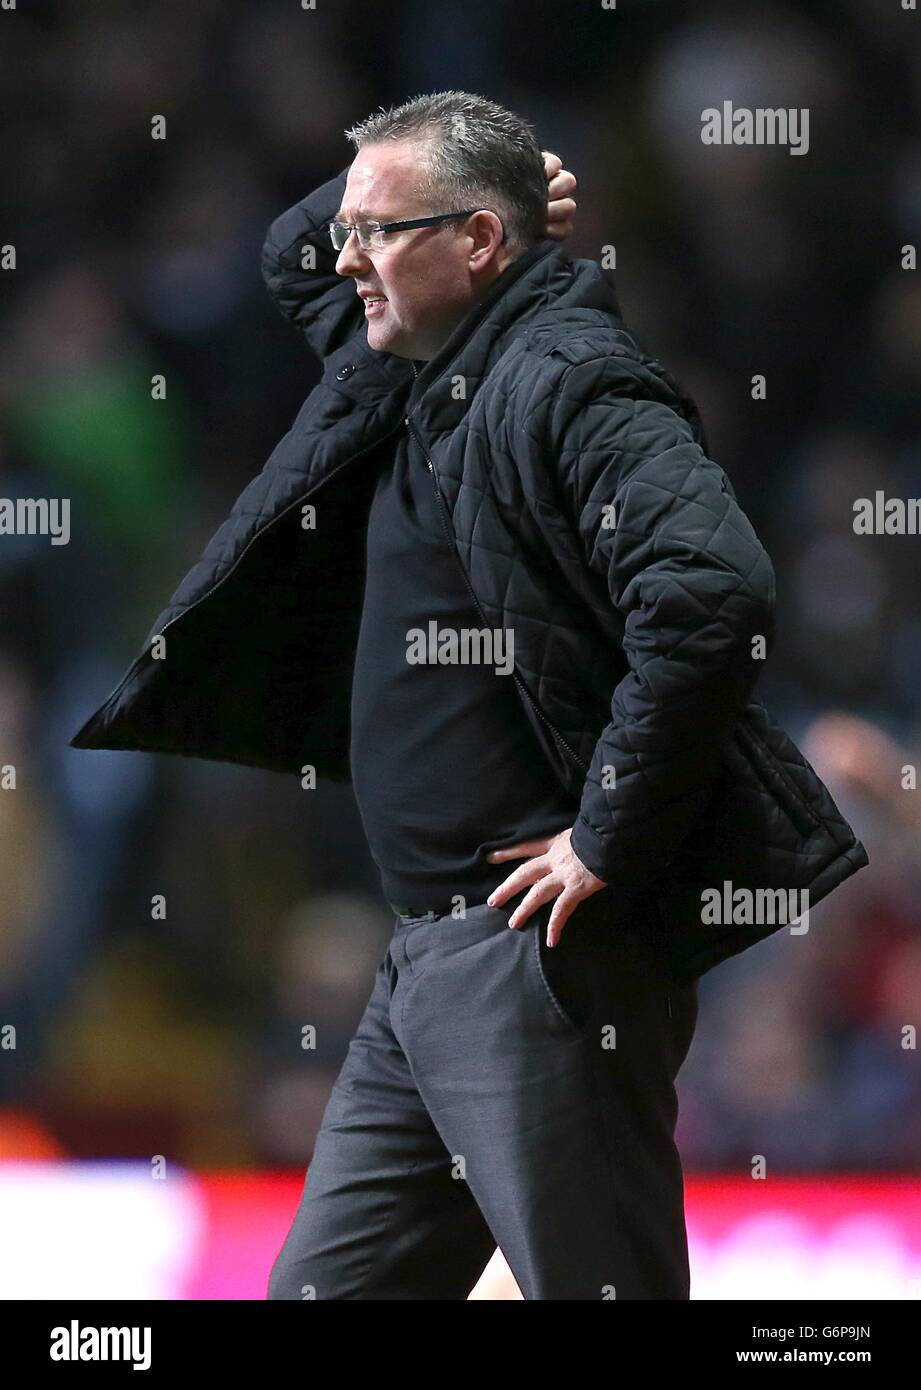 Fußball - Barclays Premier League - Aston Villa gegen Arsenal - Villa Park. Paul Lambert, Manager der Aston Villa, kratzt sich den Kopf an der Touchline Stockfoto